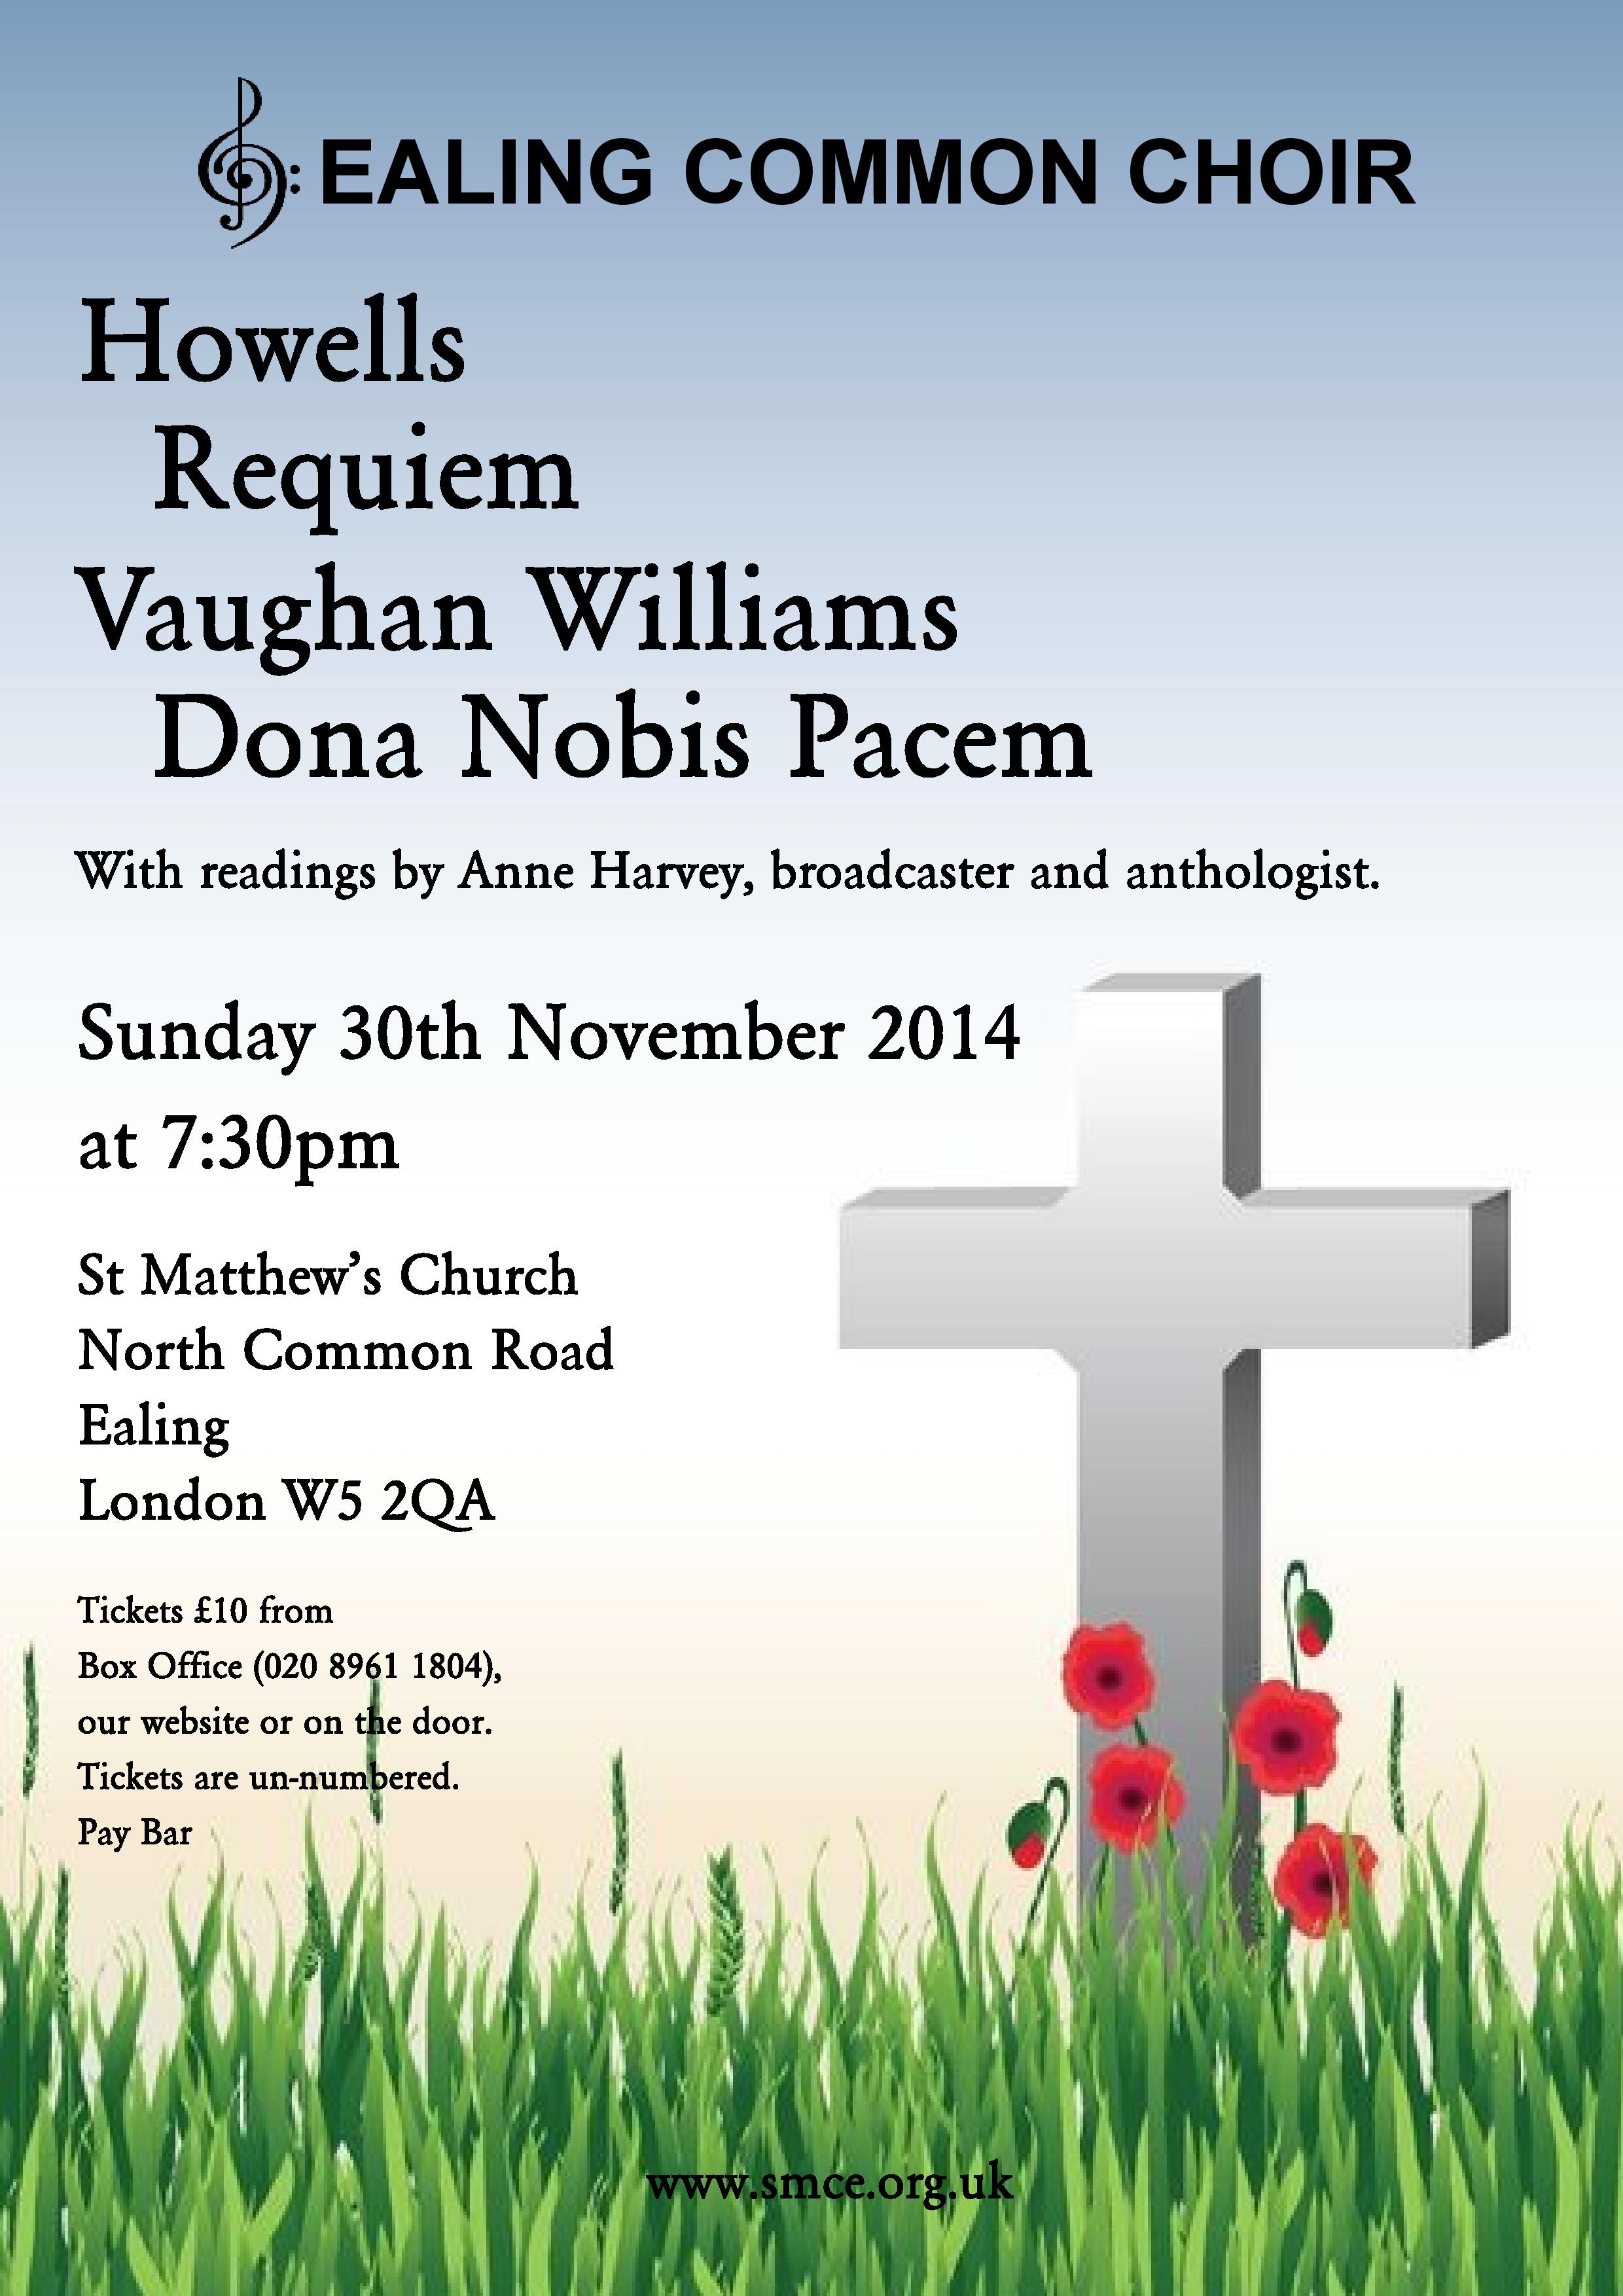 Howells Requiem, Vaughan Williams Dona Nobis Pacem